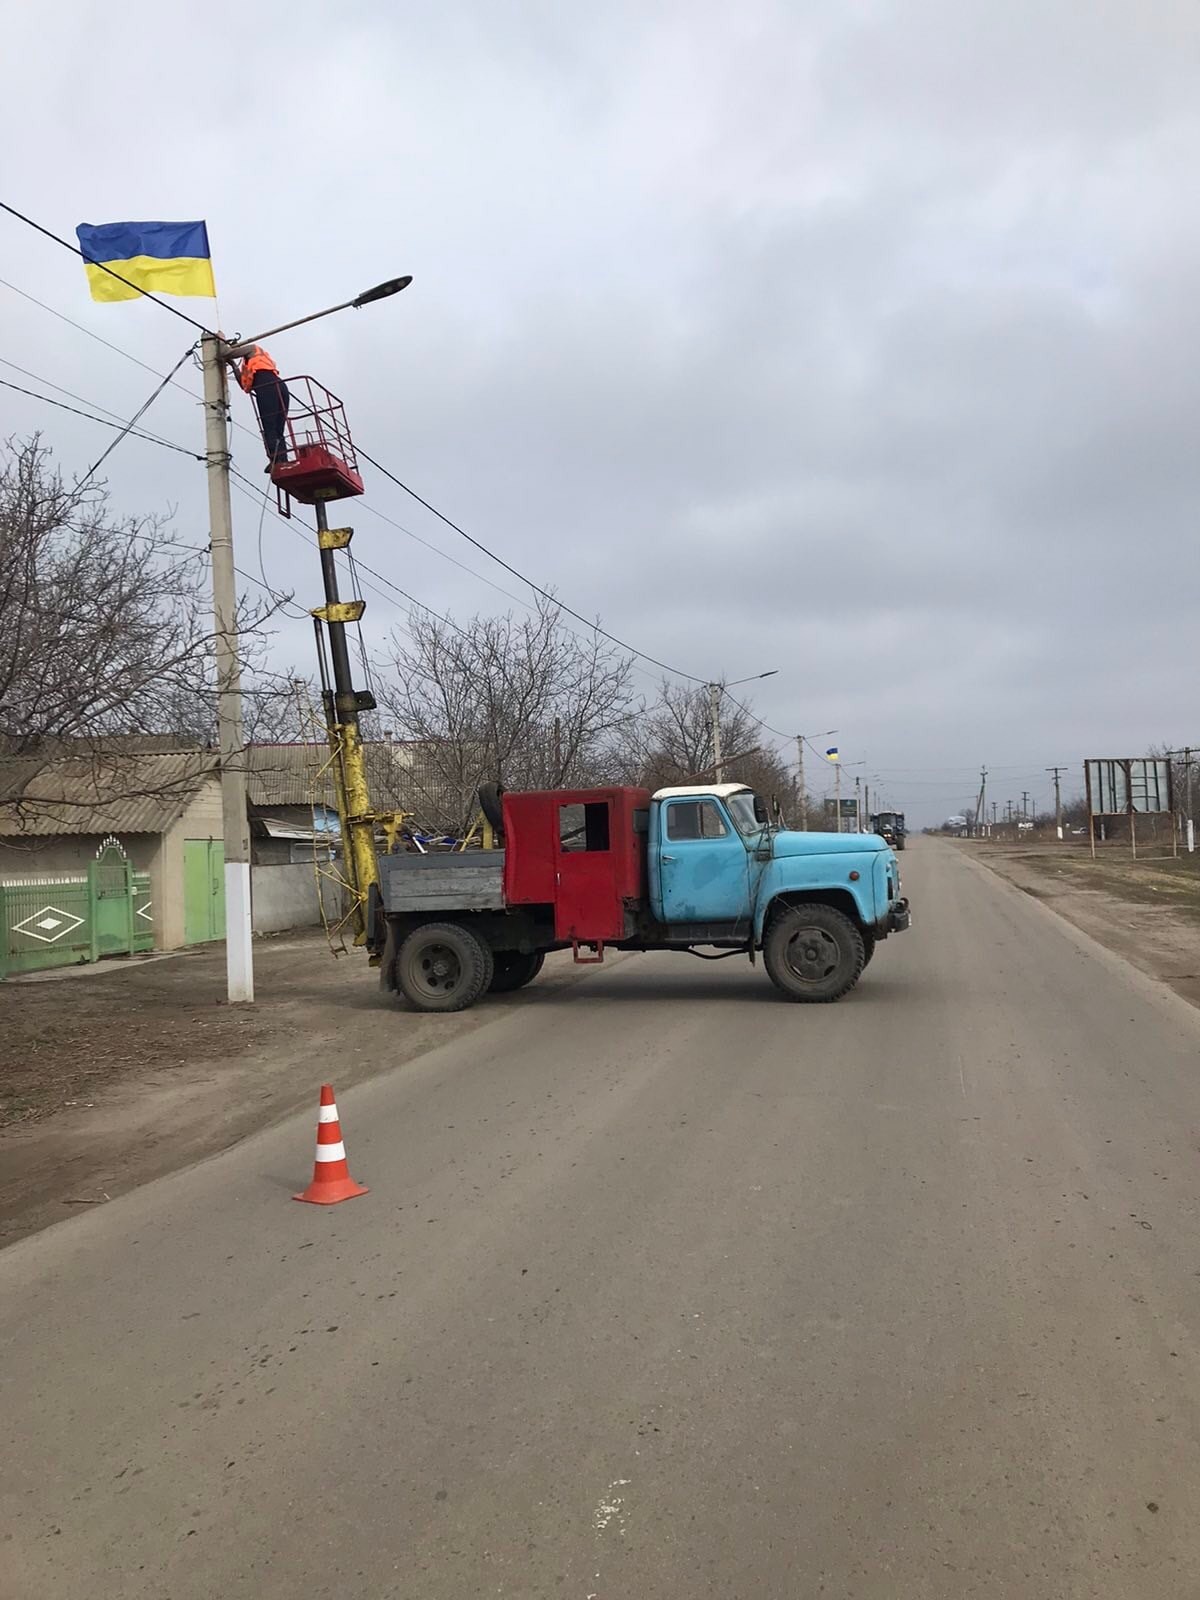 Килия - это Украина: город украсили десятками национальных Флагов